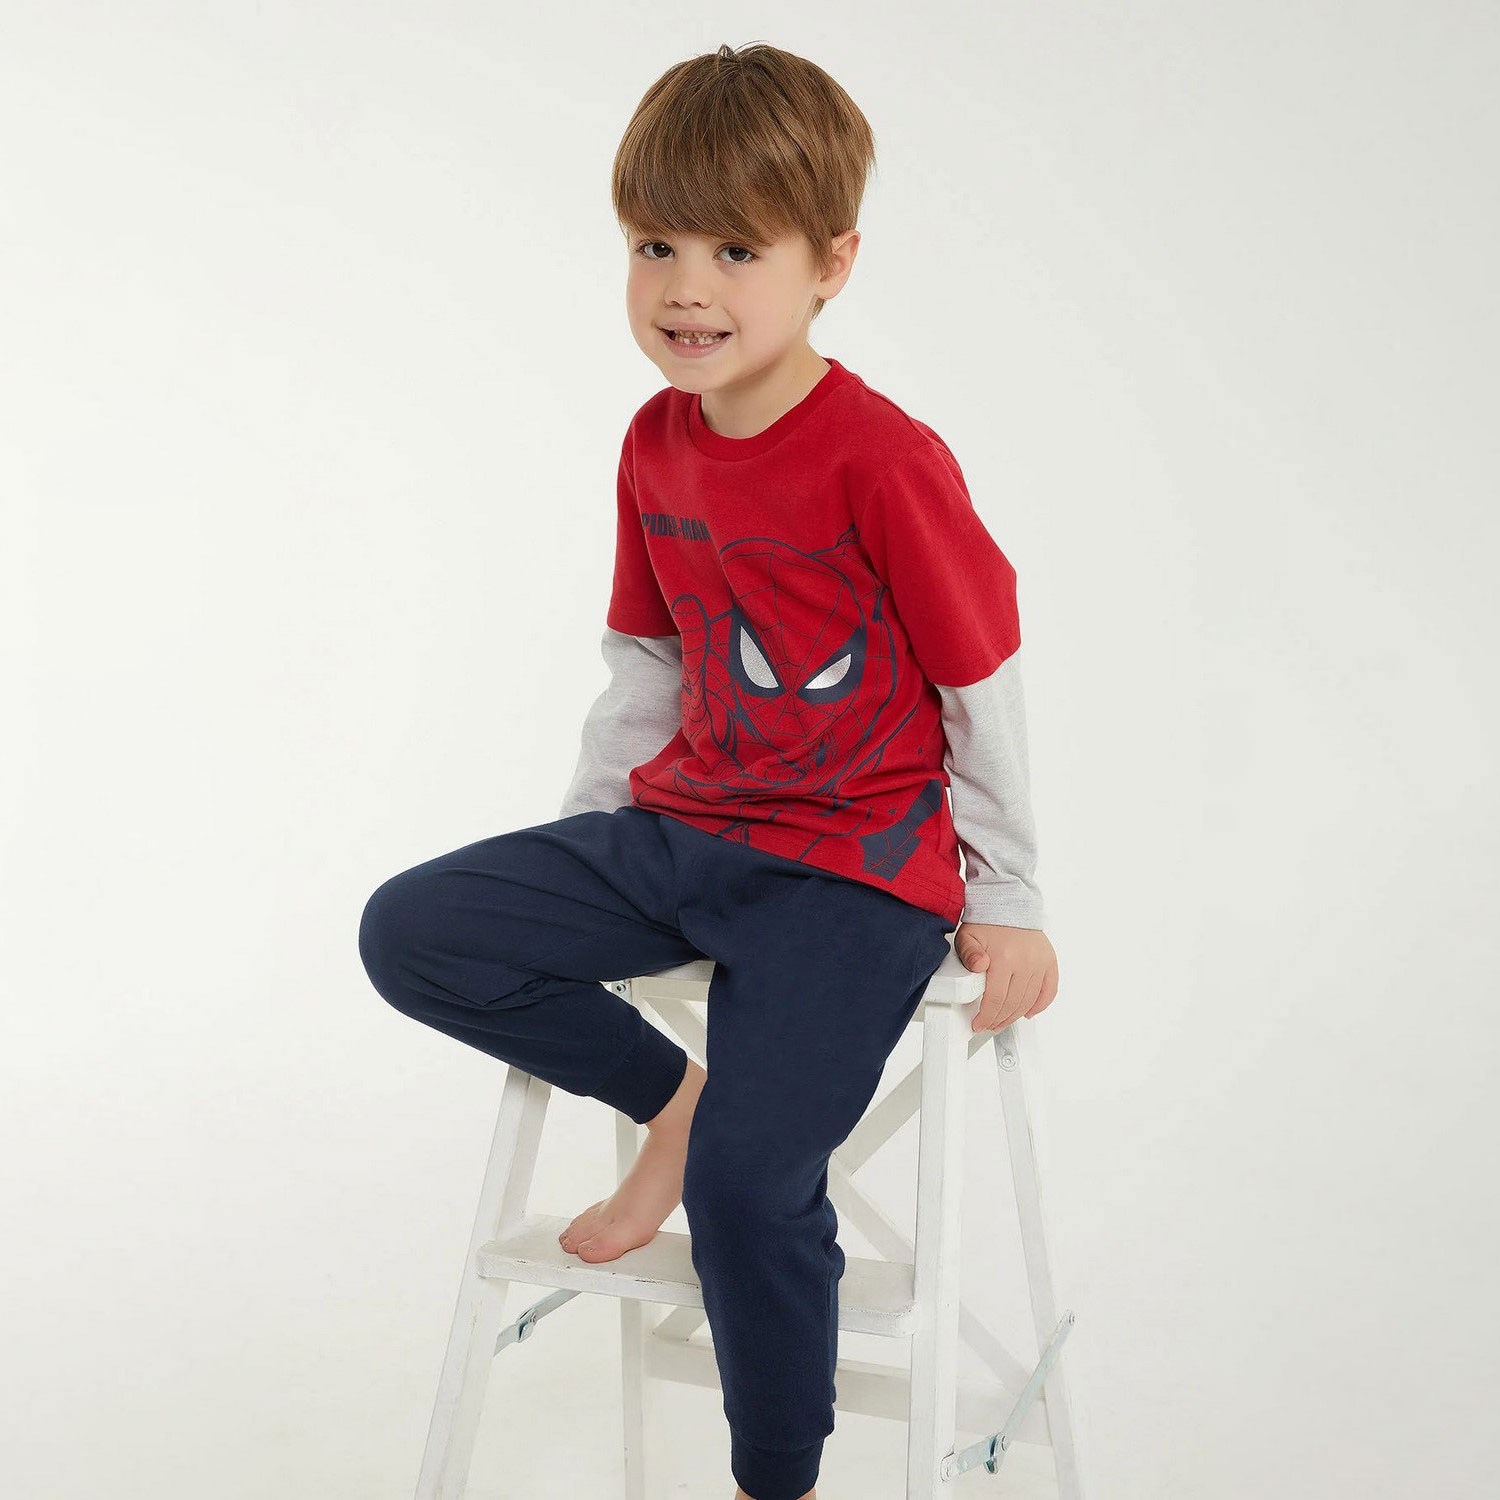 Spider-Man Erkek Çocuk 2'li Takım D4714-3 Kırmızı